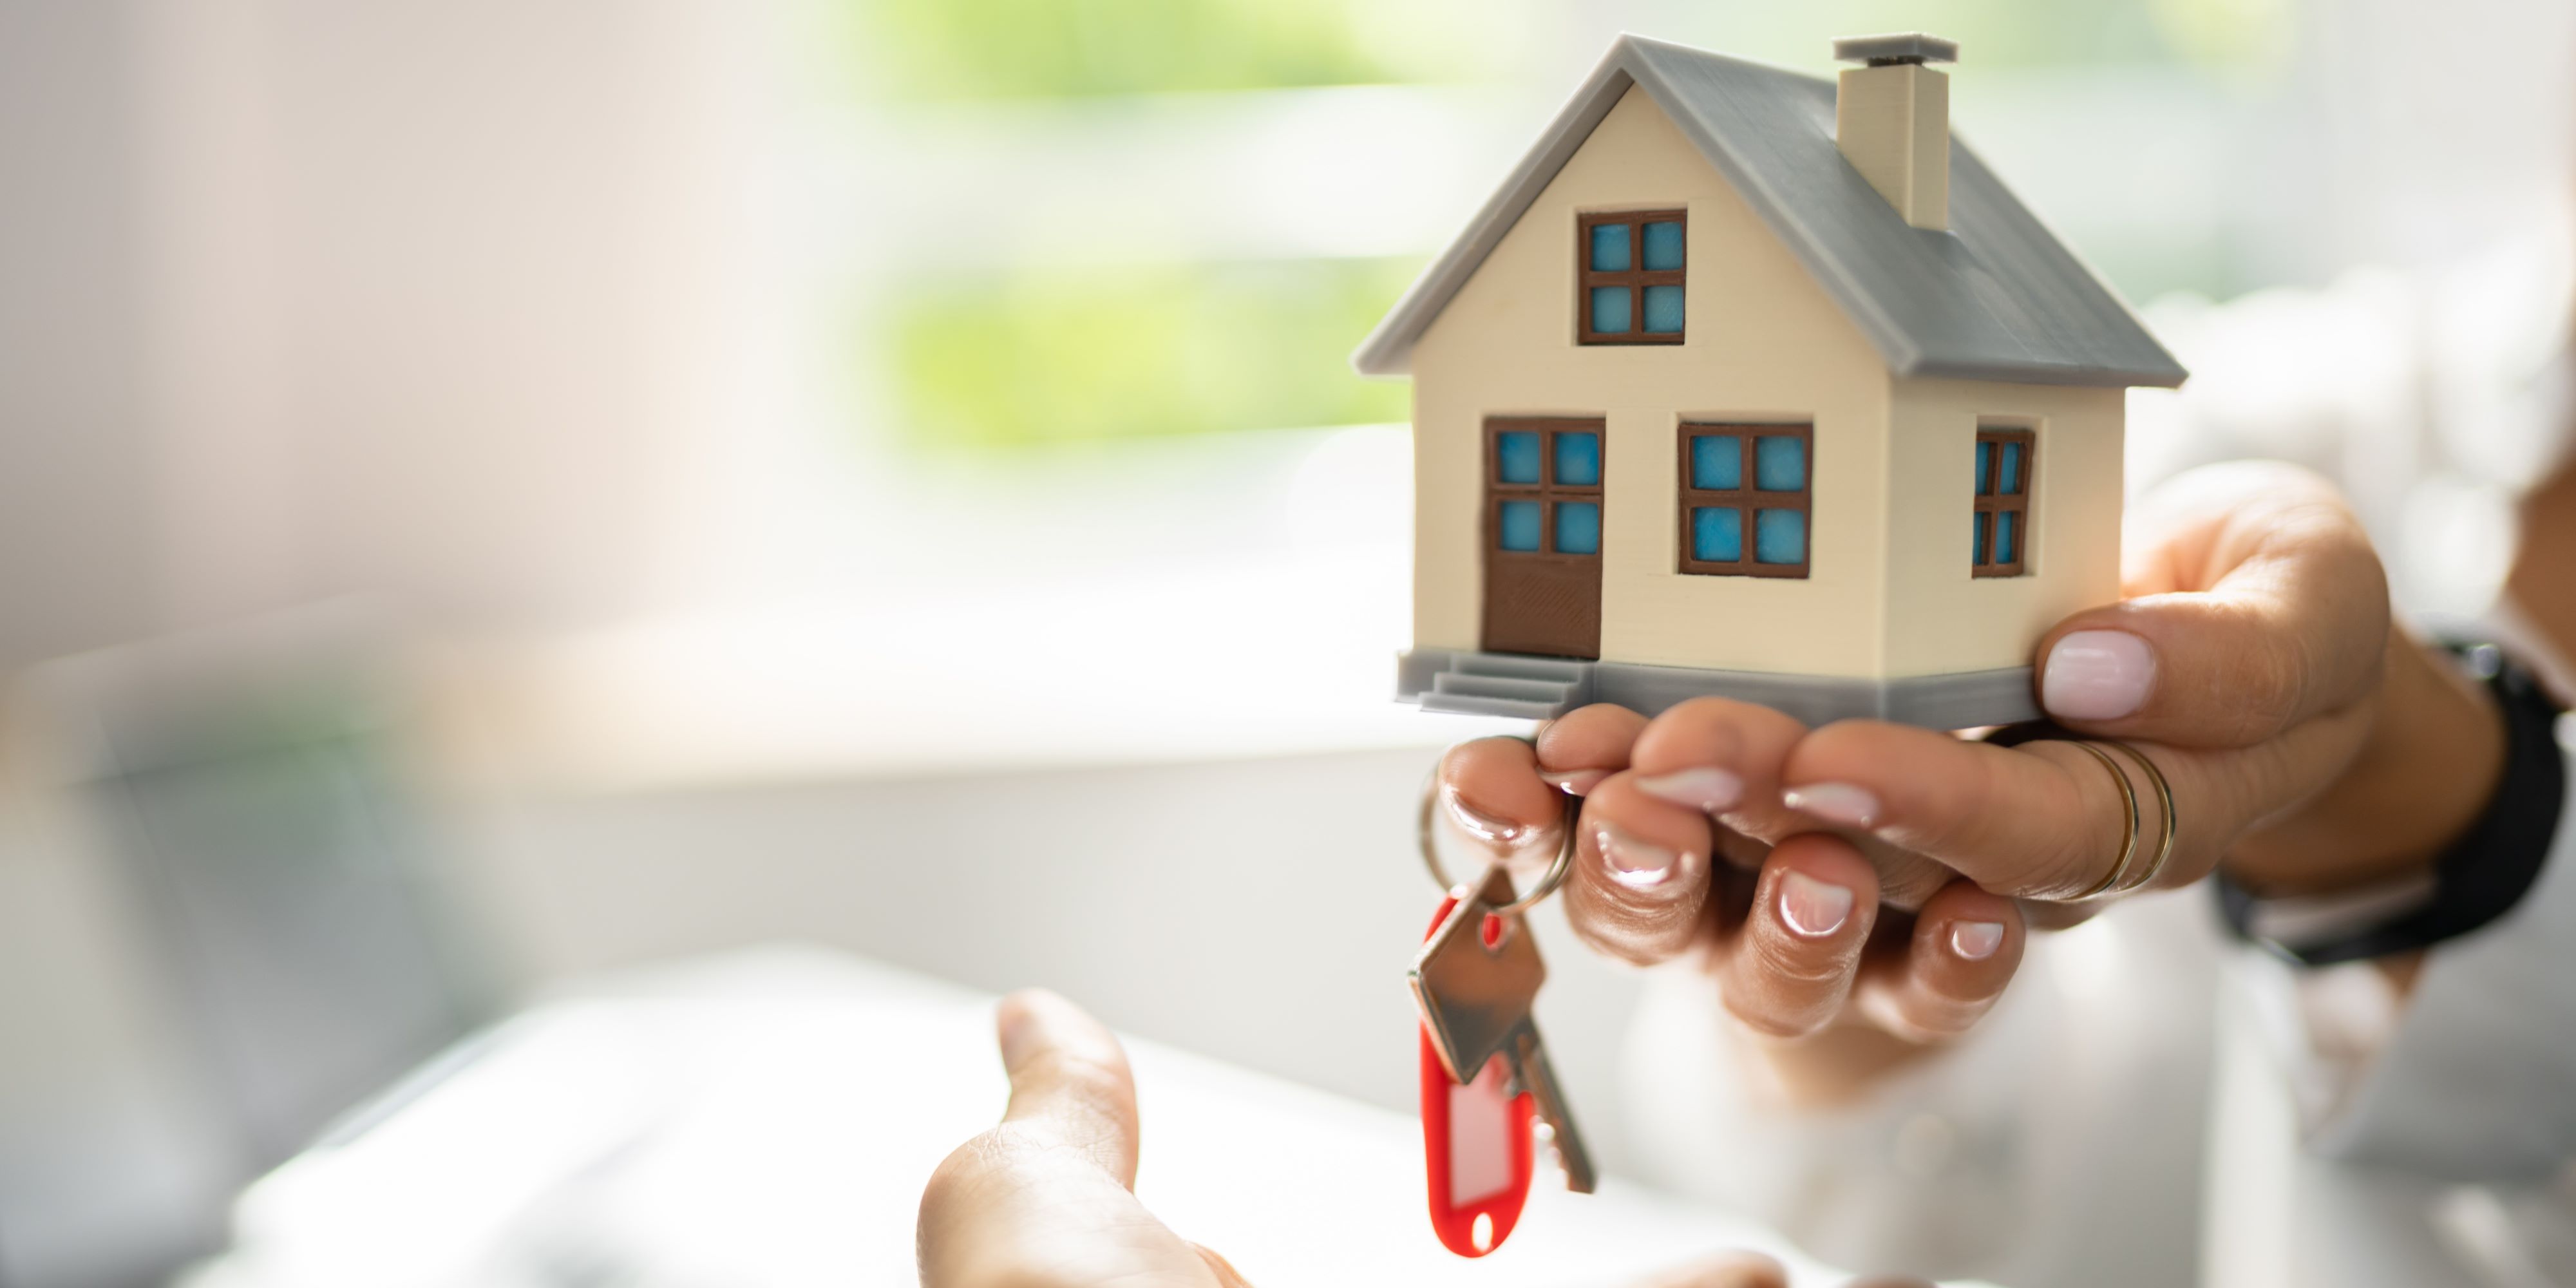 ¿Estás buscando comprar una casa pero no sabes si optar por una nueva o una usada?